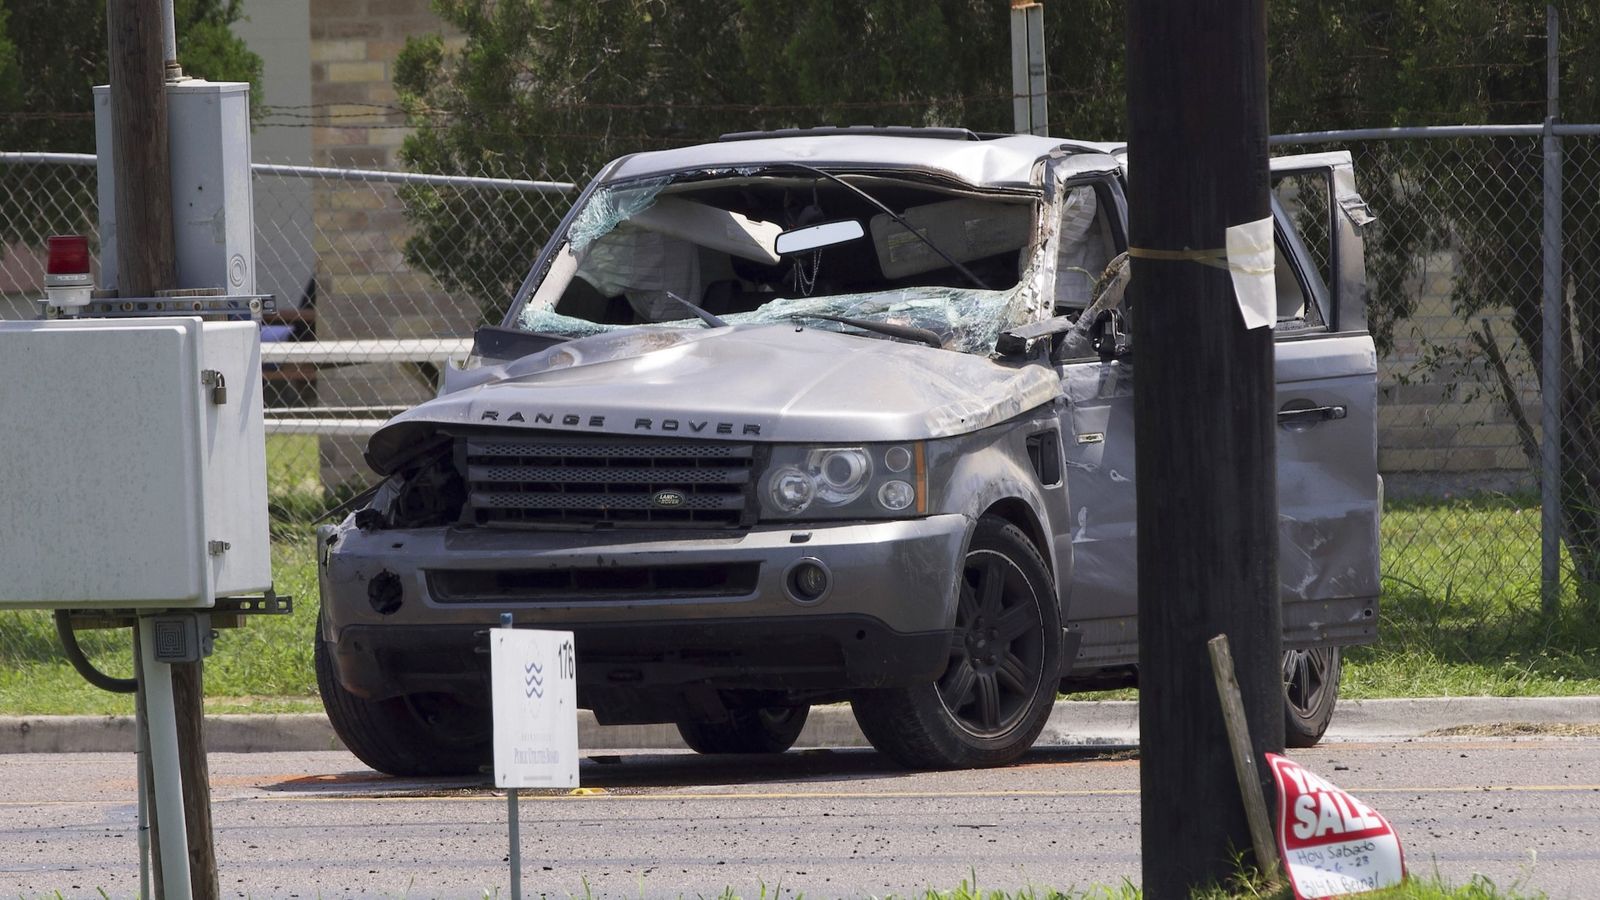 Acht Migranten tot, mindestens 10 verletzt, nach tödlichem Autounfall in Brownsville, Texas